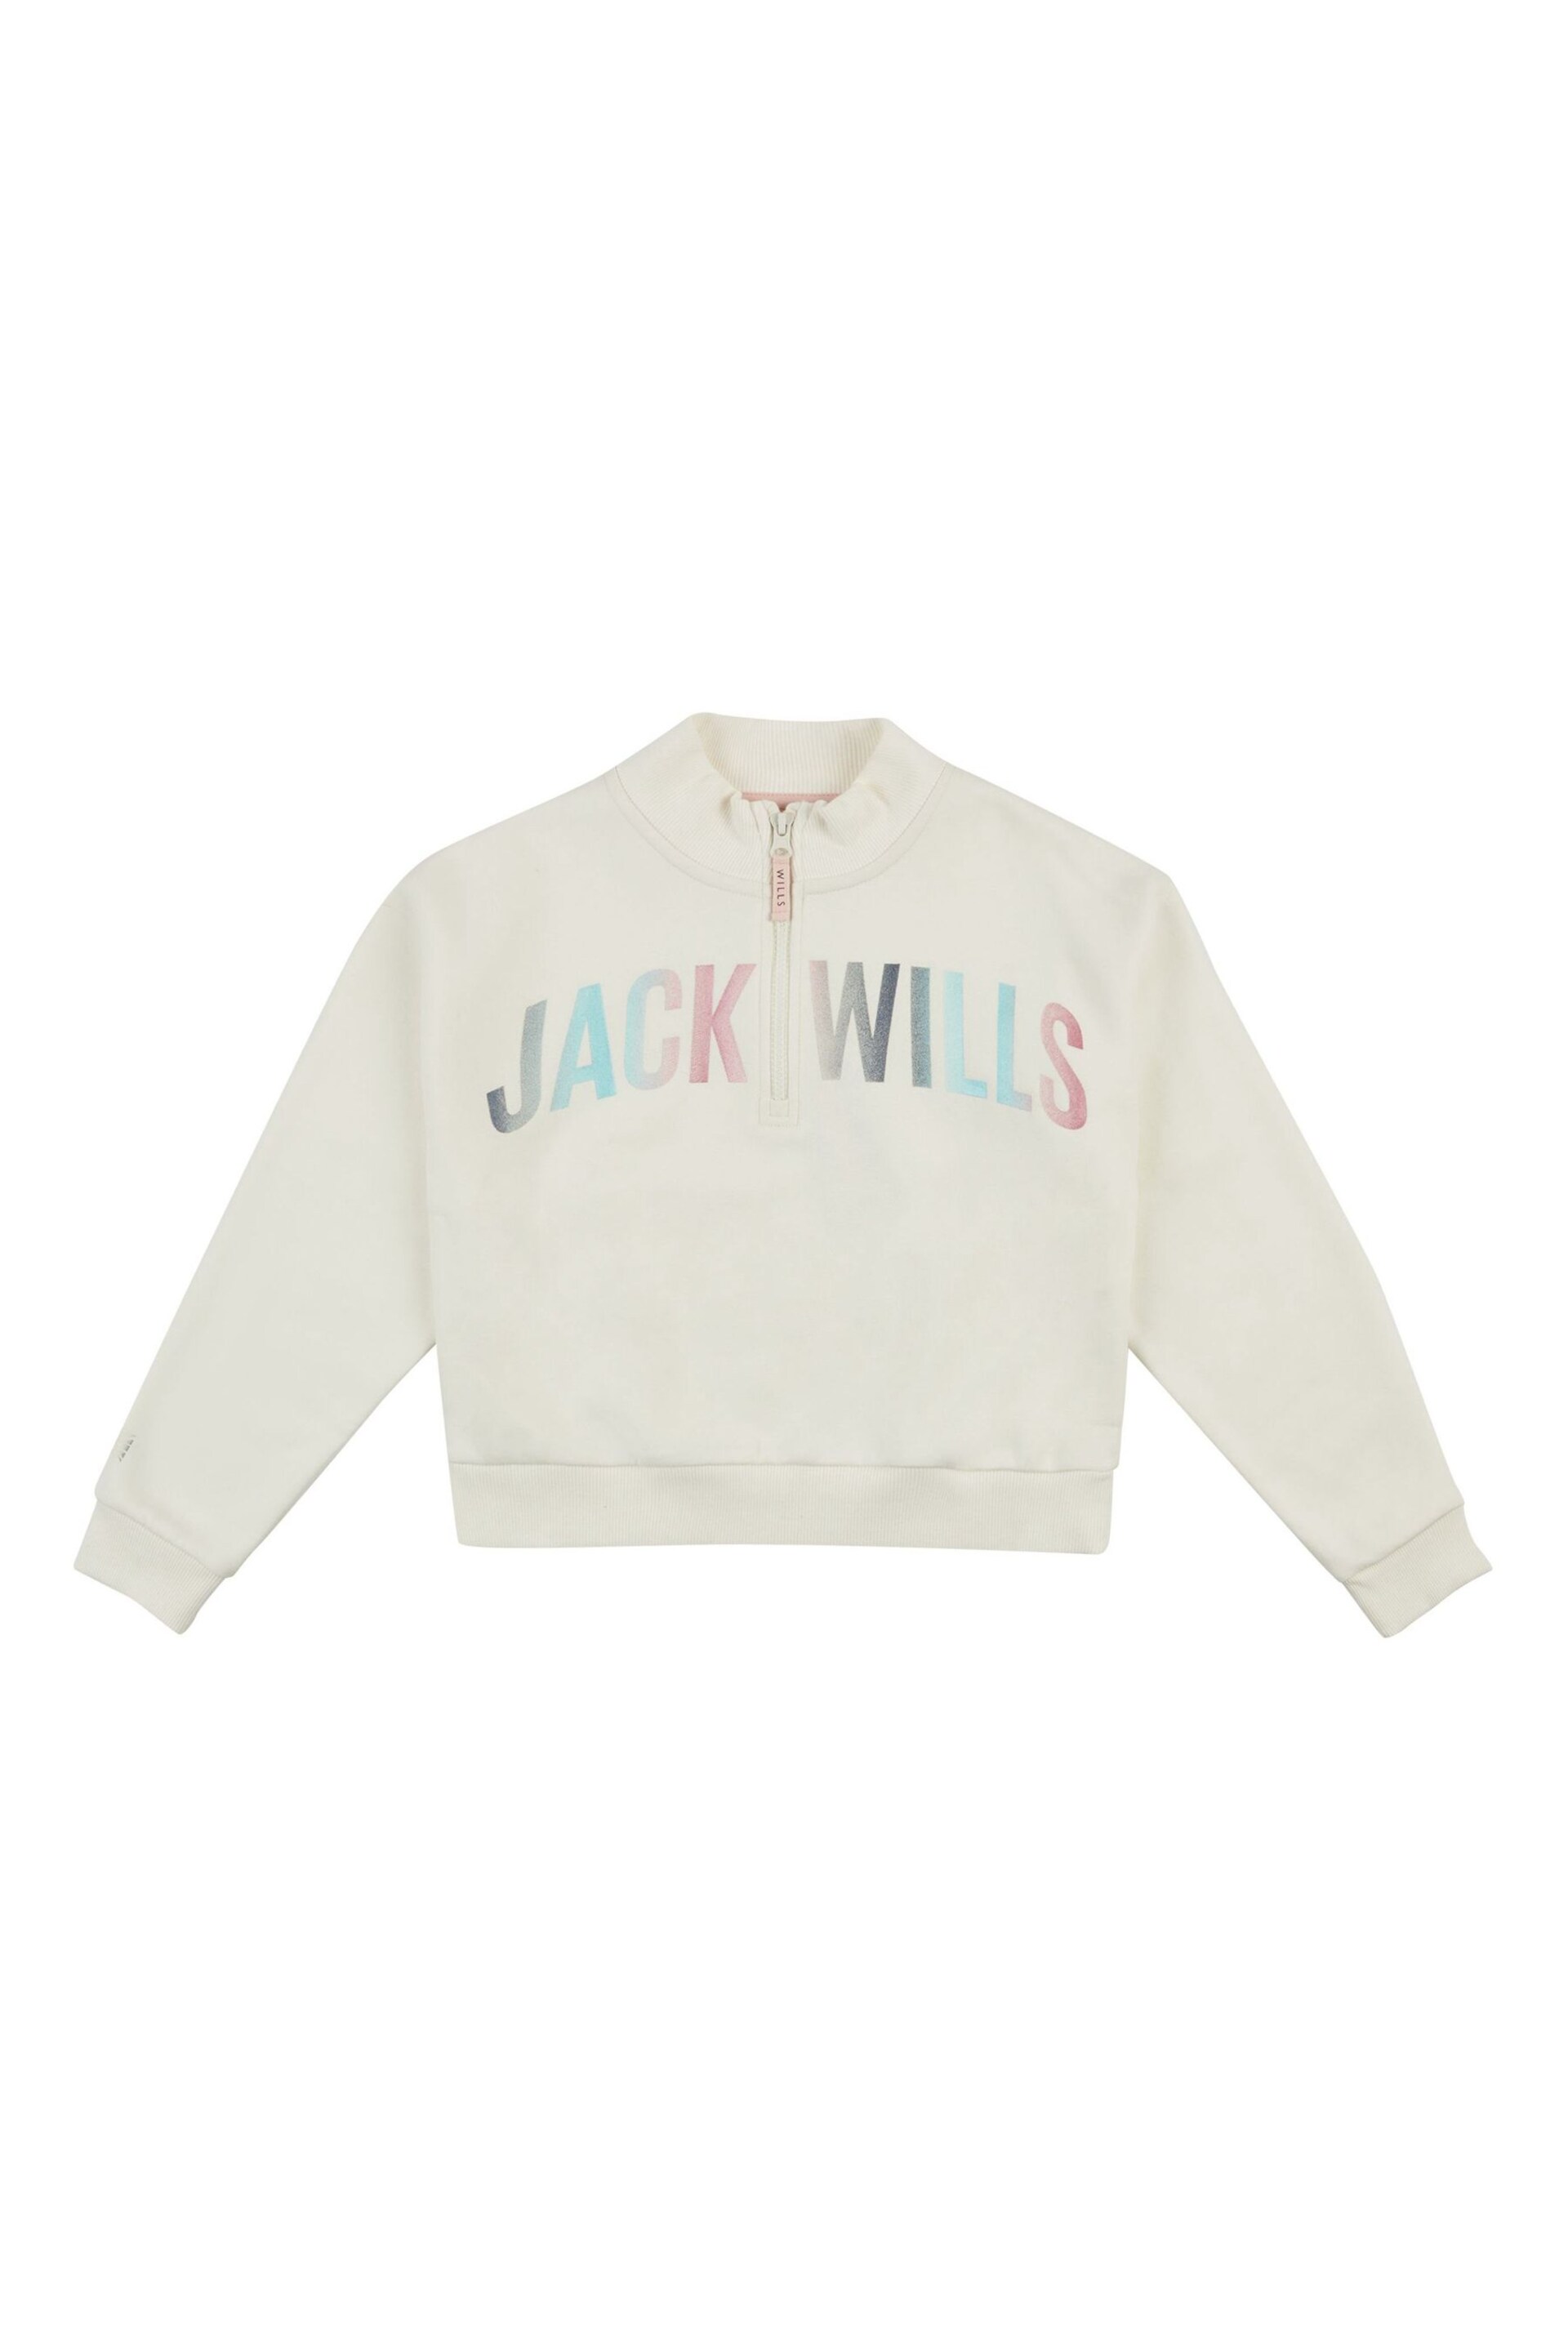 Jack Wills Cream Foil Print 1/4 Zip Sweatshirt - Image 5 of 6